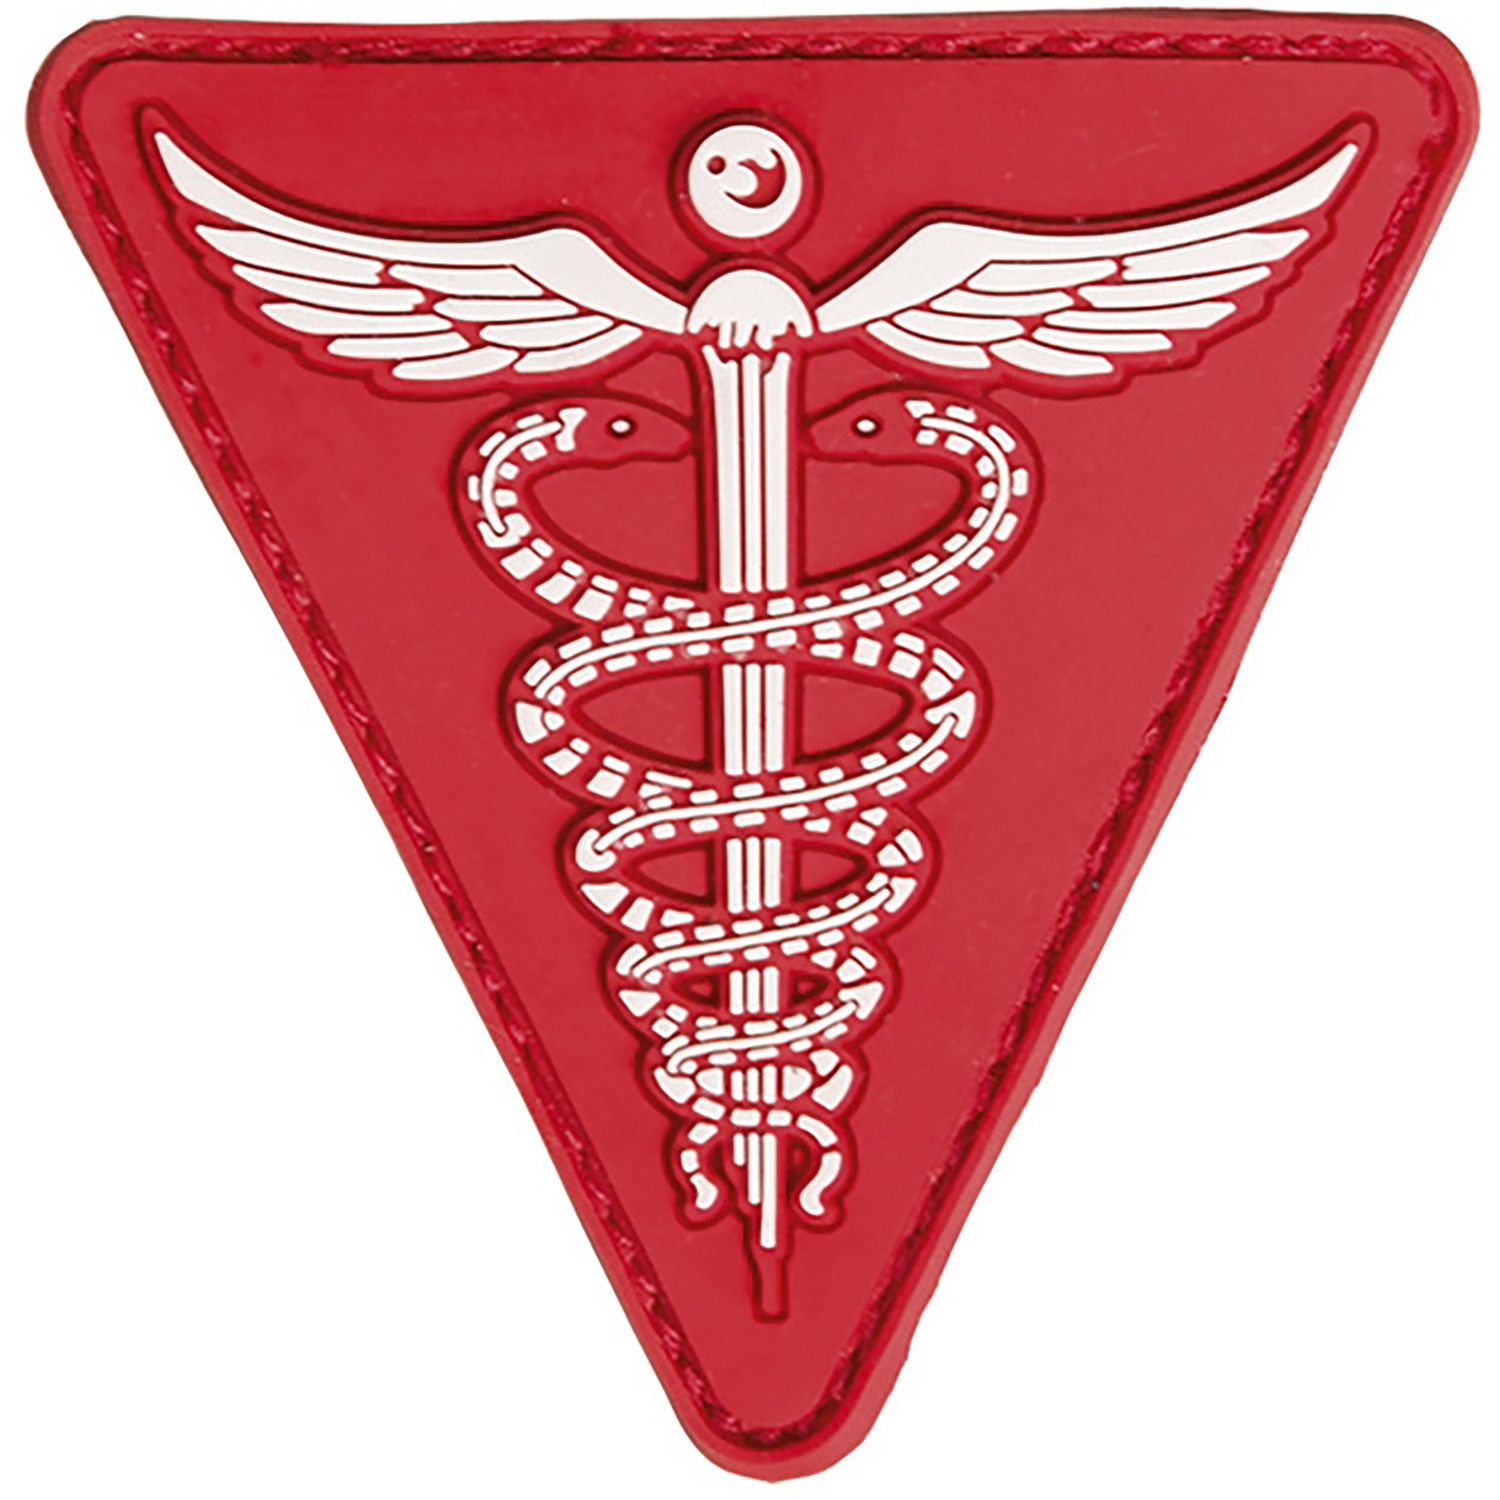 Klett-Abzeichen Medical 7 x 7 cm aus Gummi in Rot